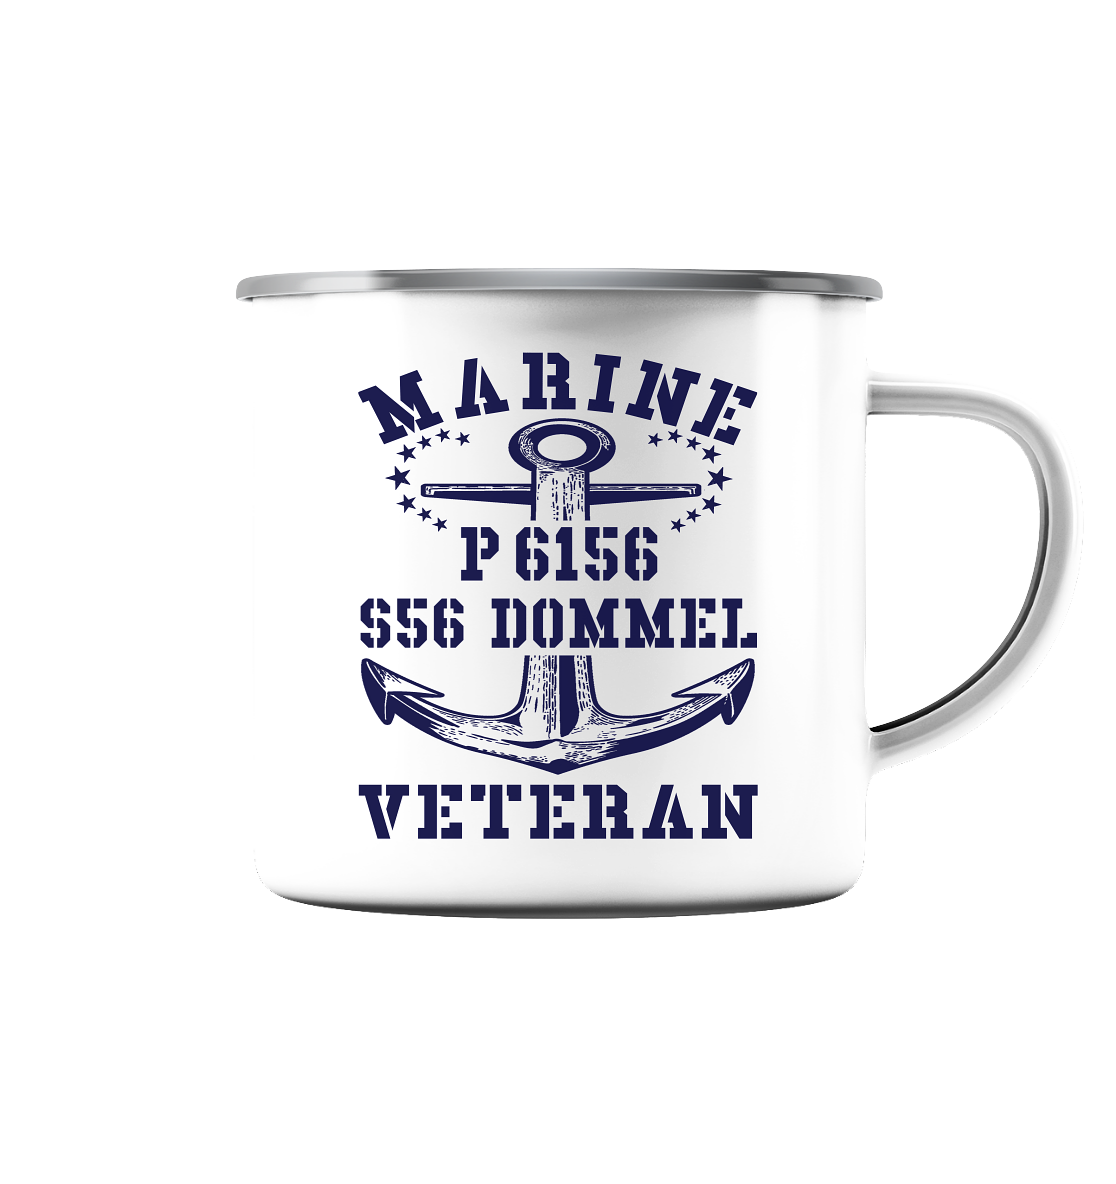 P6156 S56 DOMMEL Marine Veteran - Emaille Tasse (Silber)